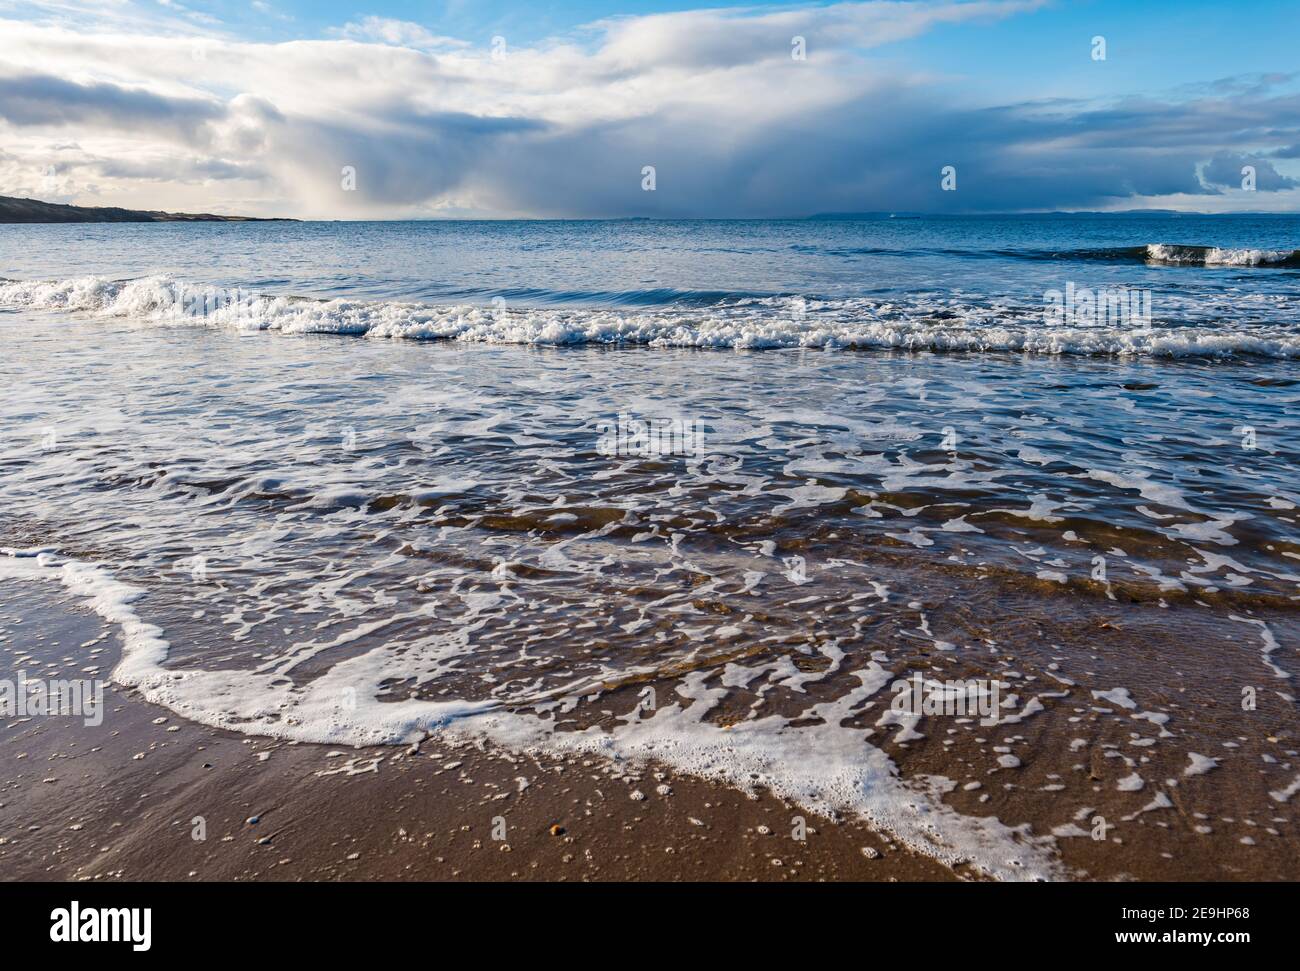 Onde sulla spiaggia di sabbia nella giornata di sole con il cielo tempestoso sul Firth of Forth Horizon, Gullane Beach, East Lothian, Scozia, Regno Unito Foto Stock